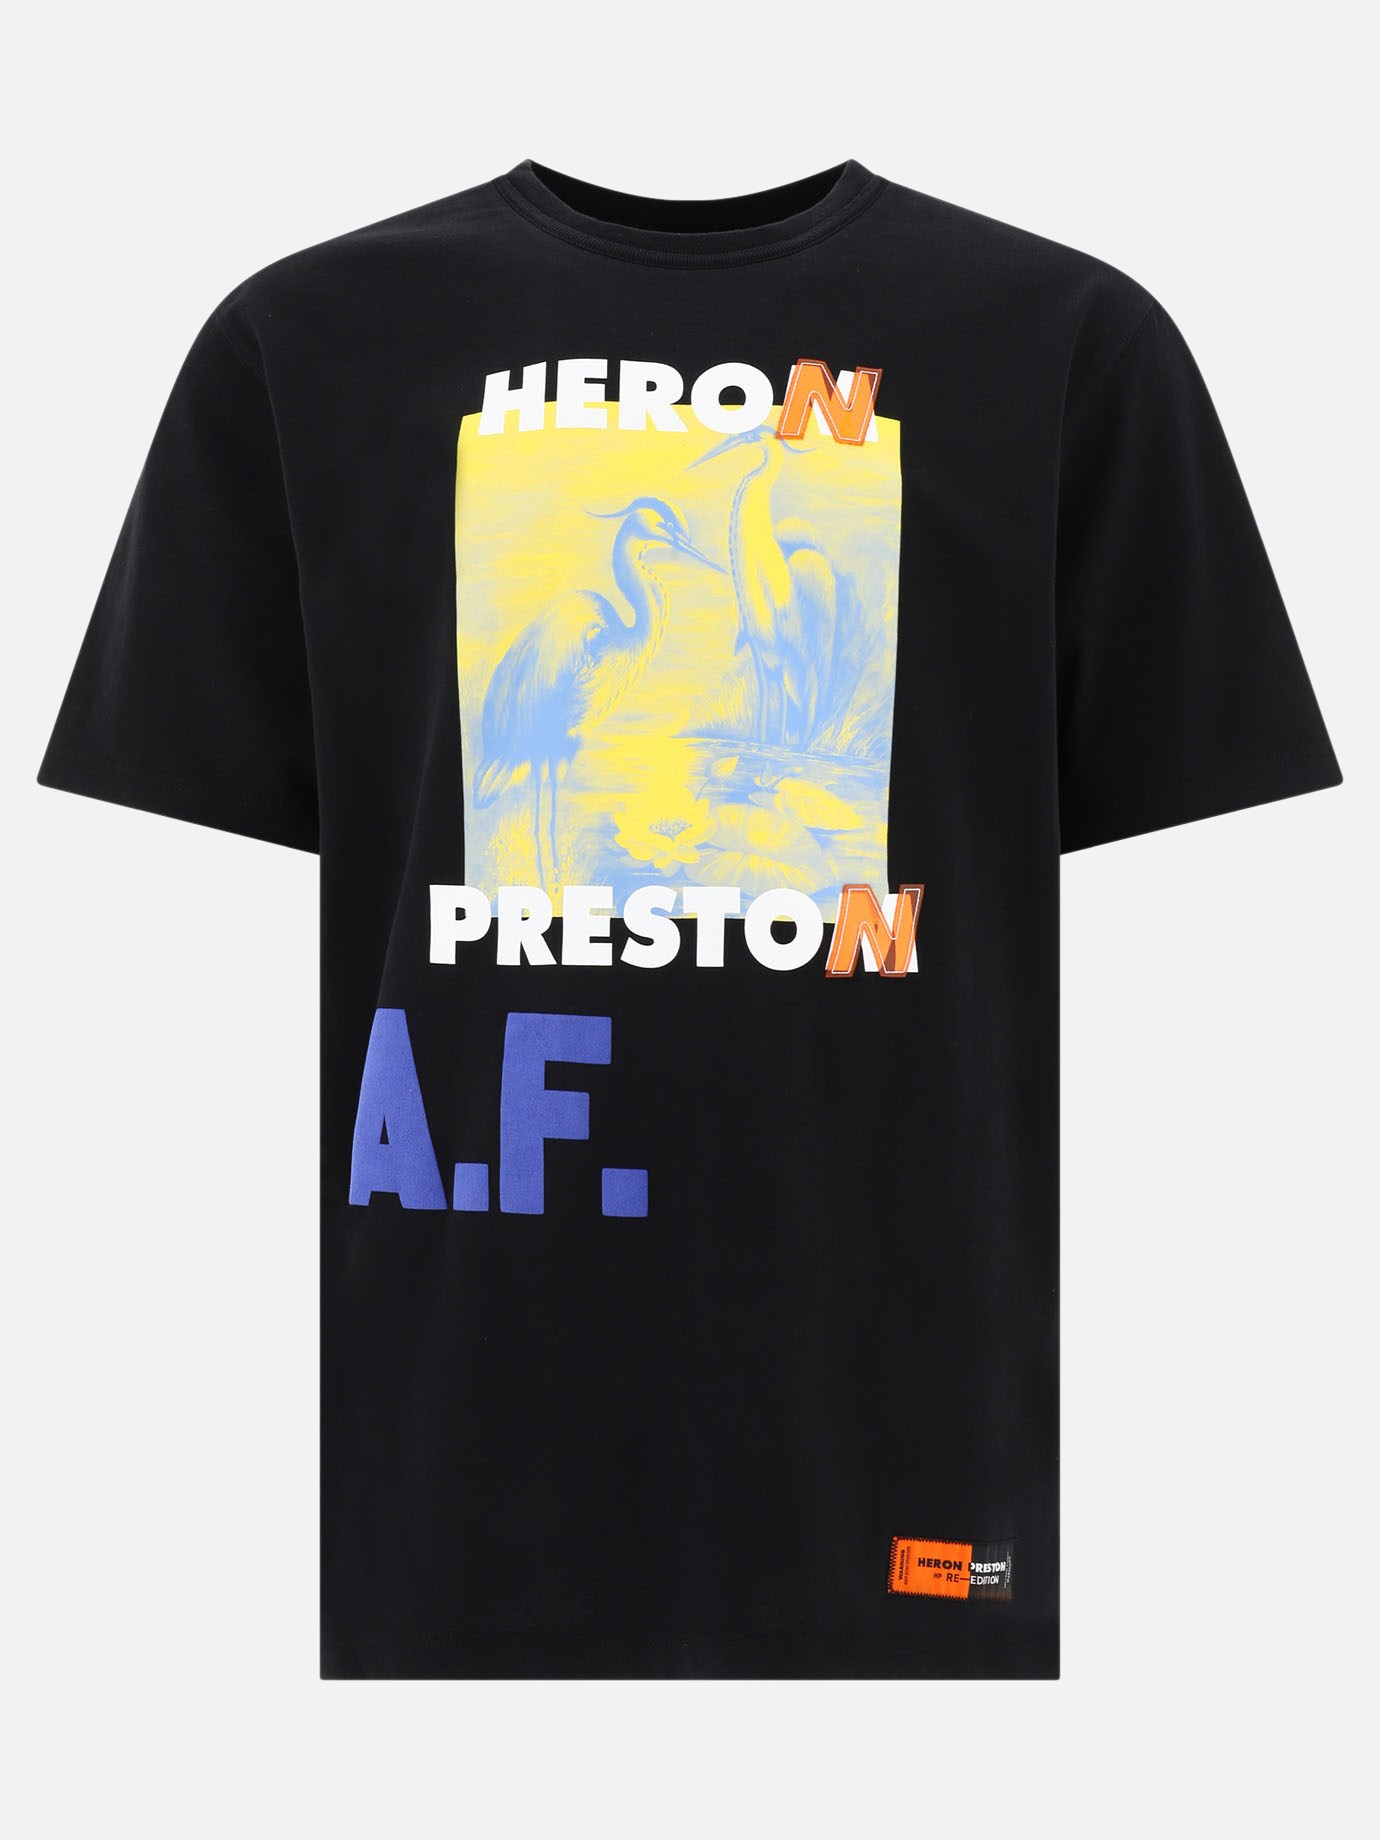  A.F. Authorized  t-shirtby Heron Preston - 4